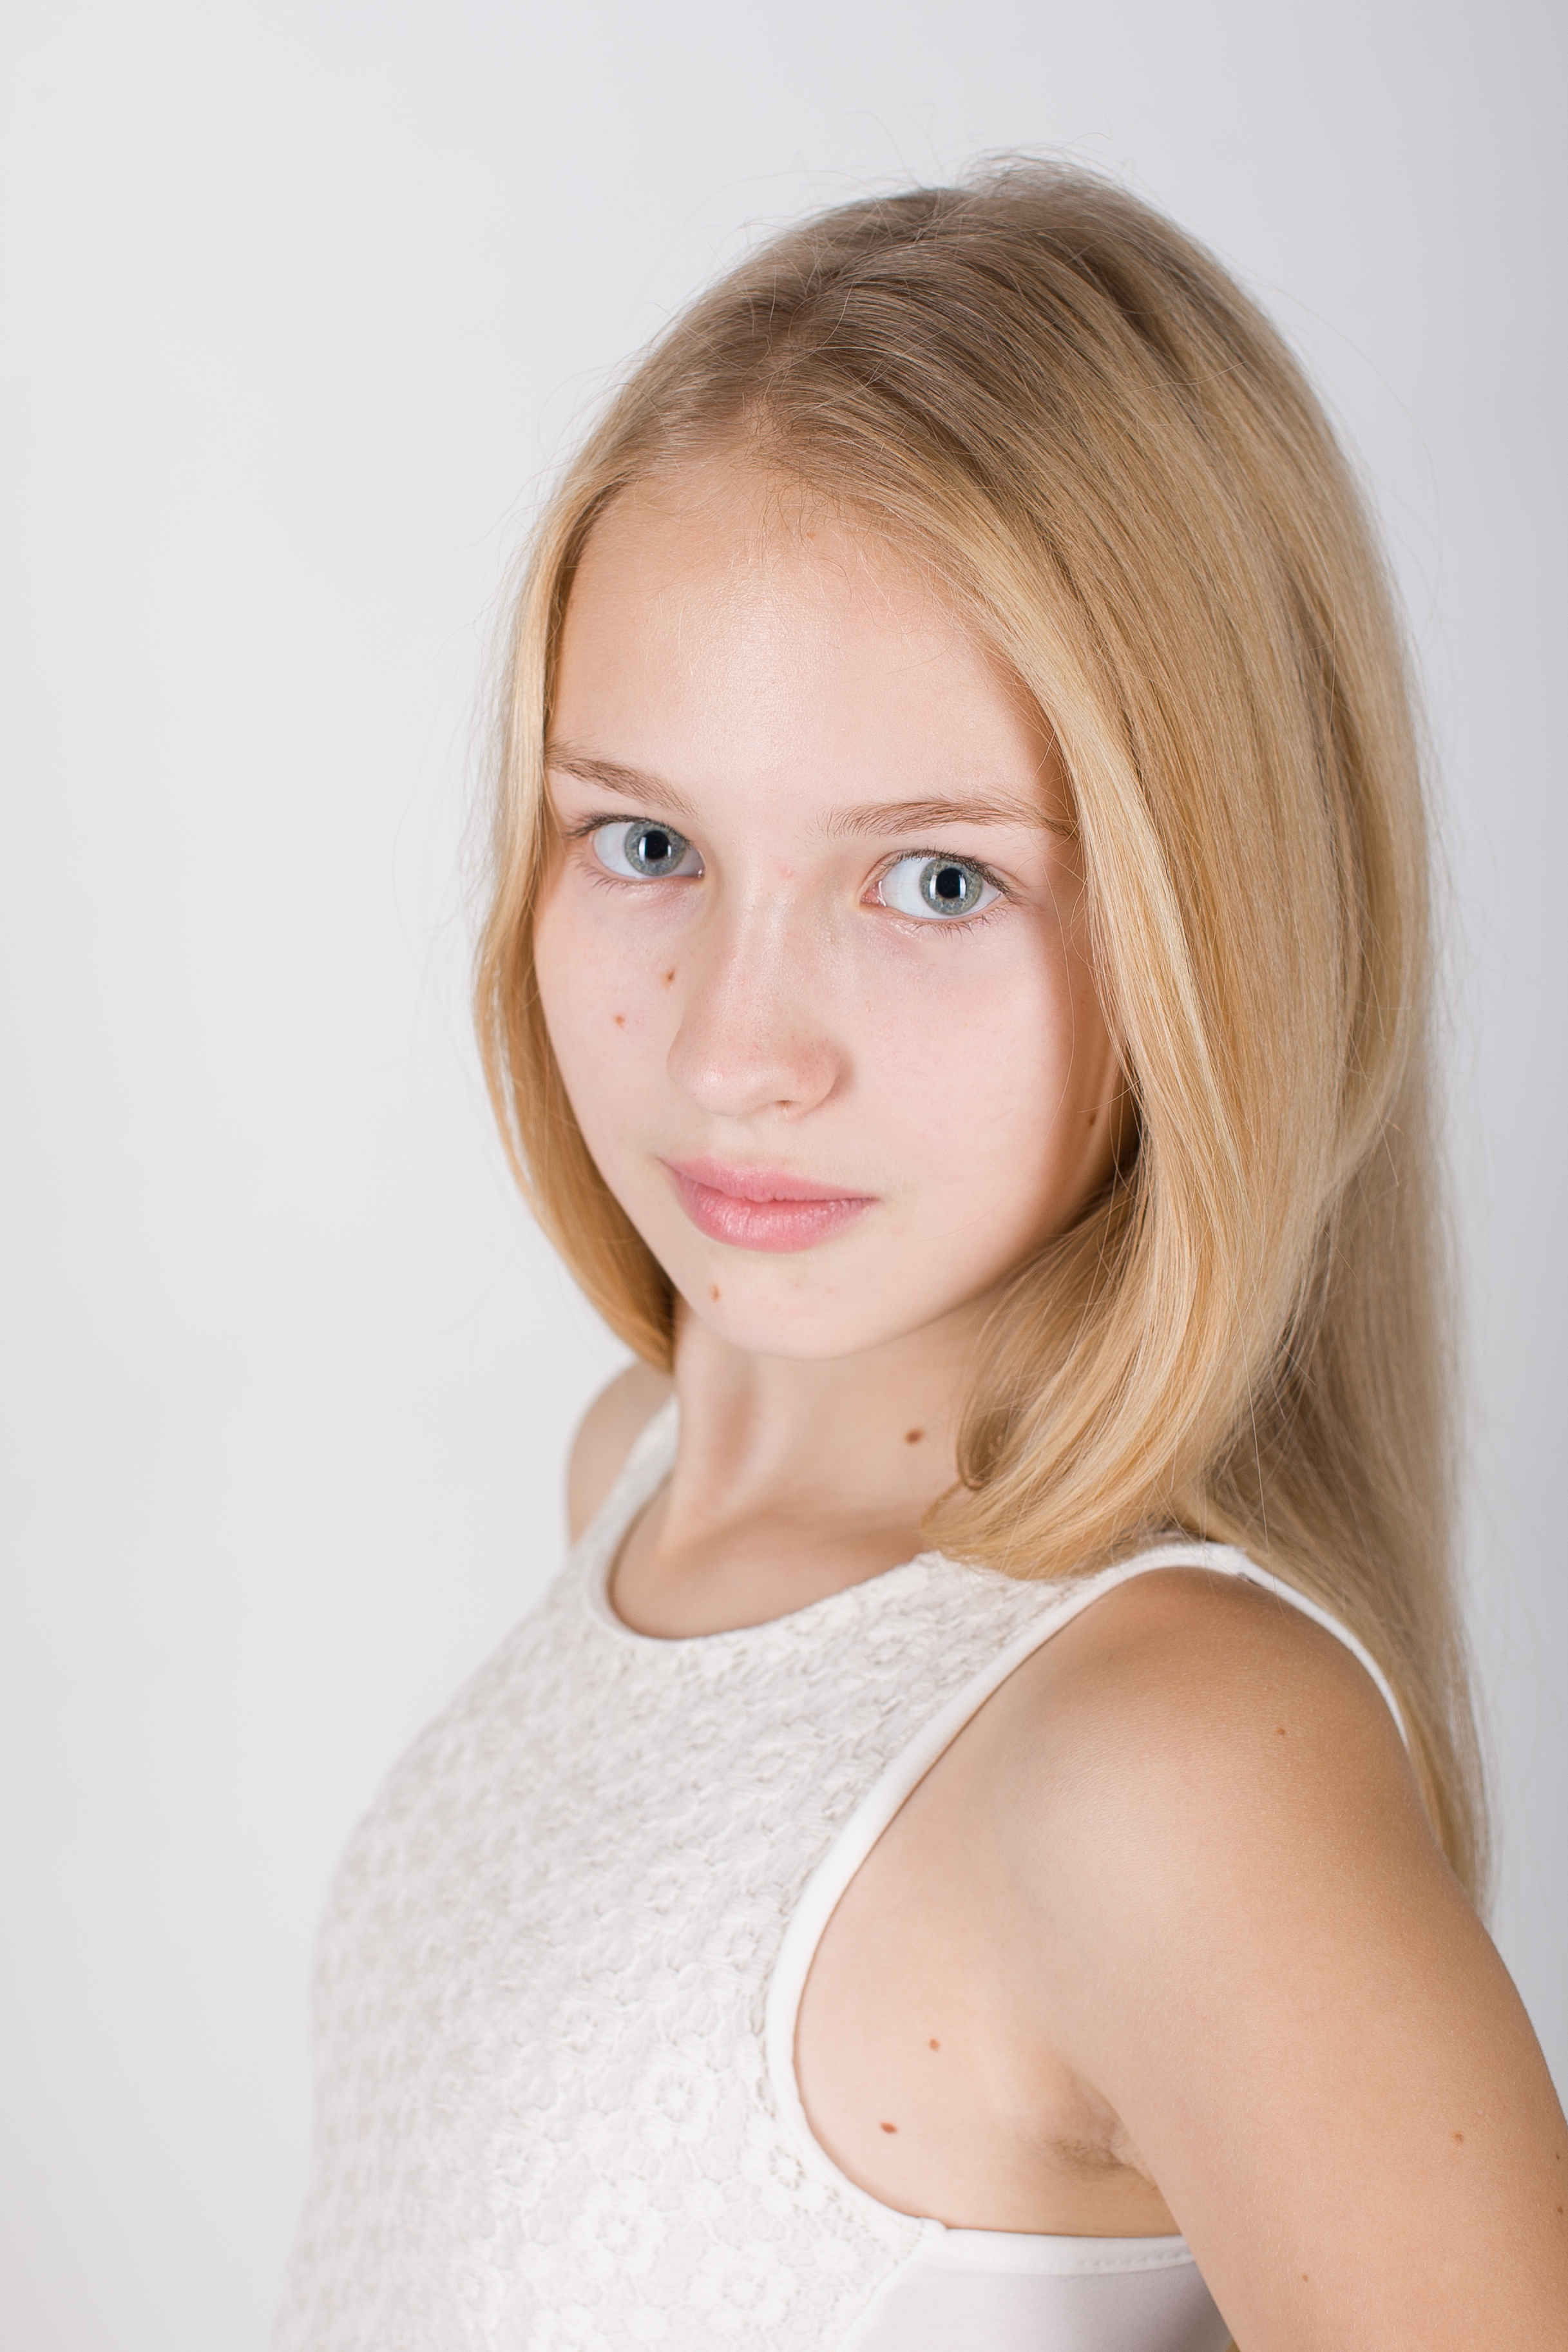 Полина Горячева - аккредитованная модель для участия в подиумных показах на Междунродной Детской Неделе моды